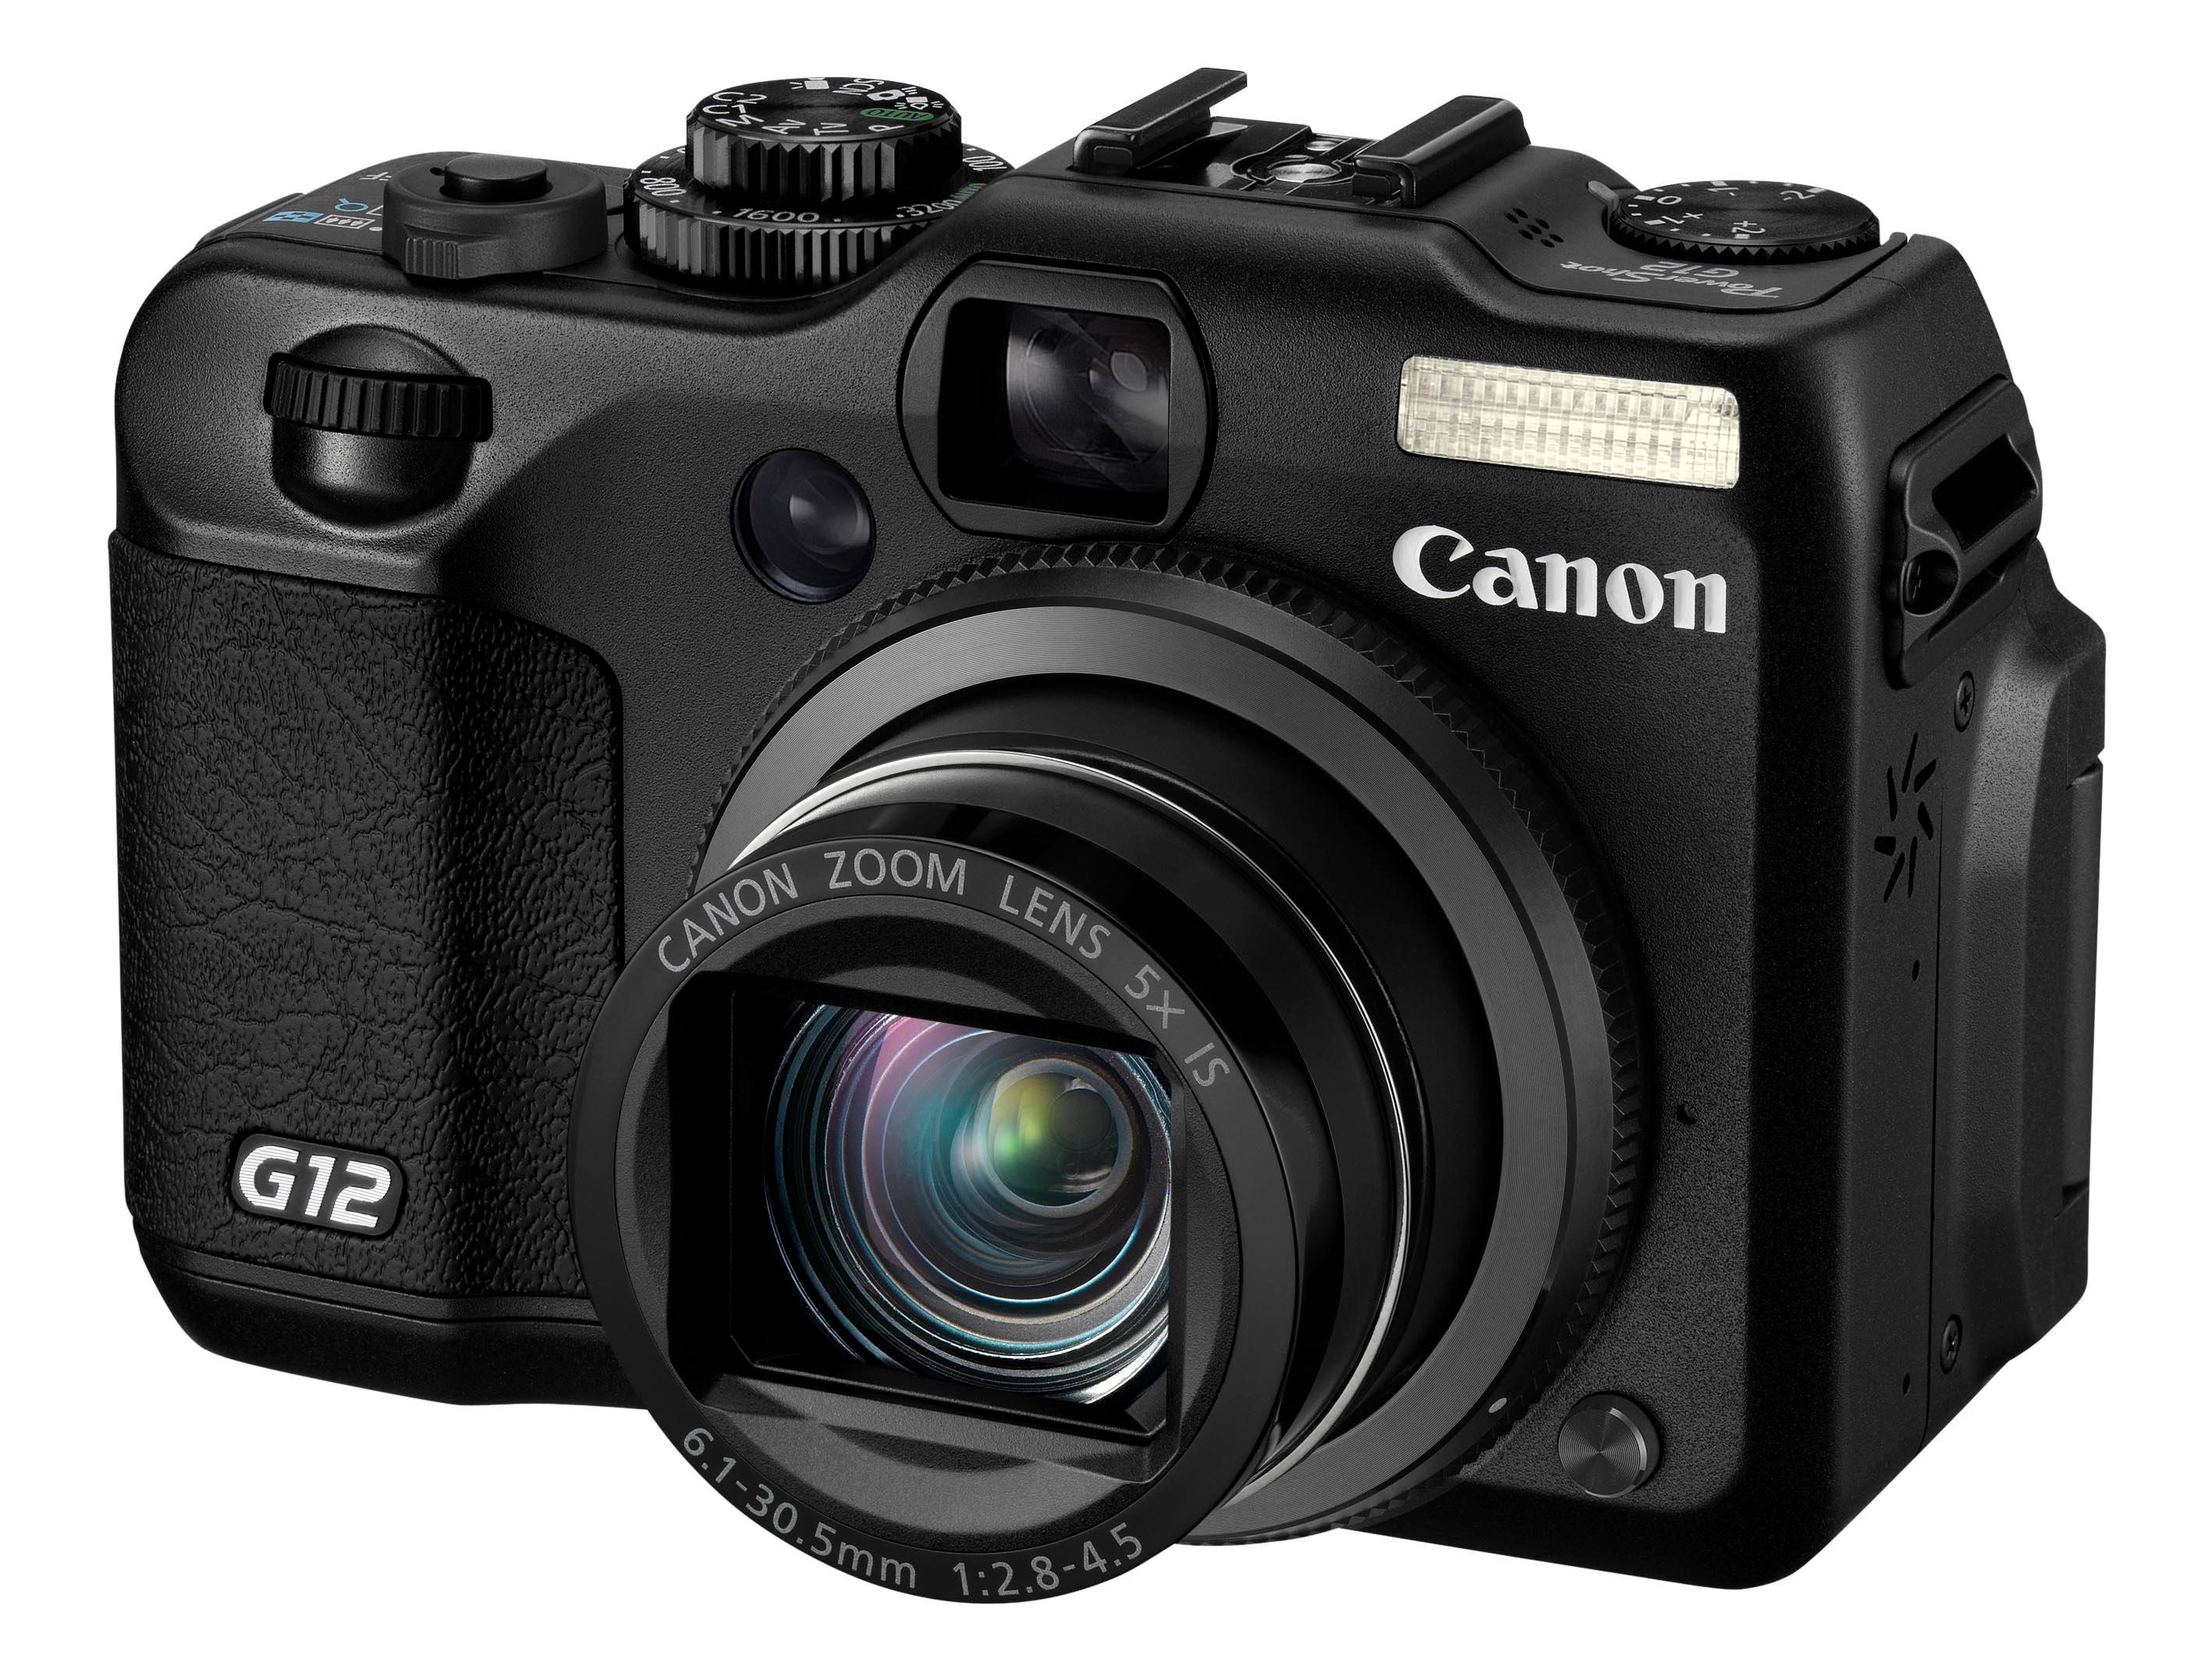 Canon PowerShot G12.